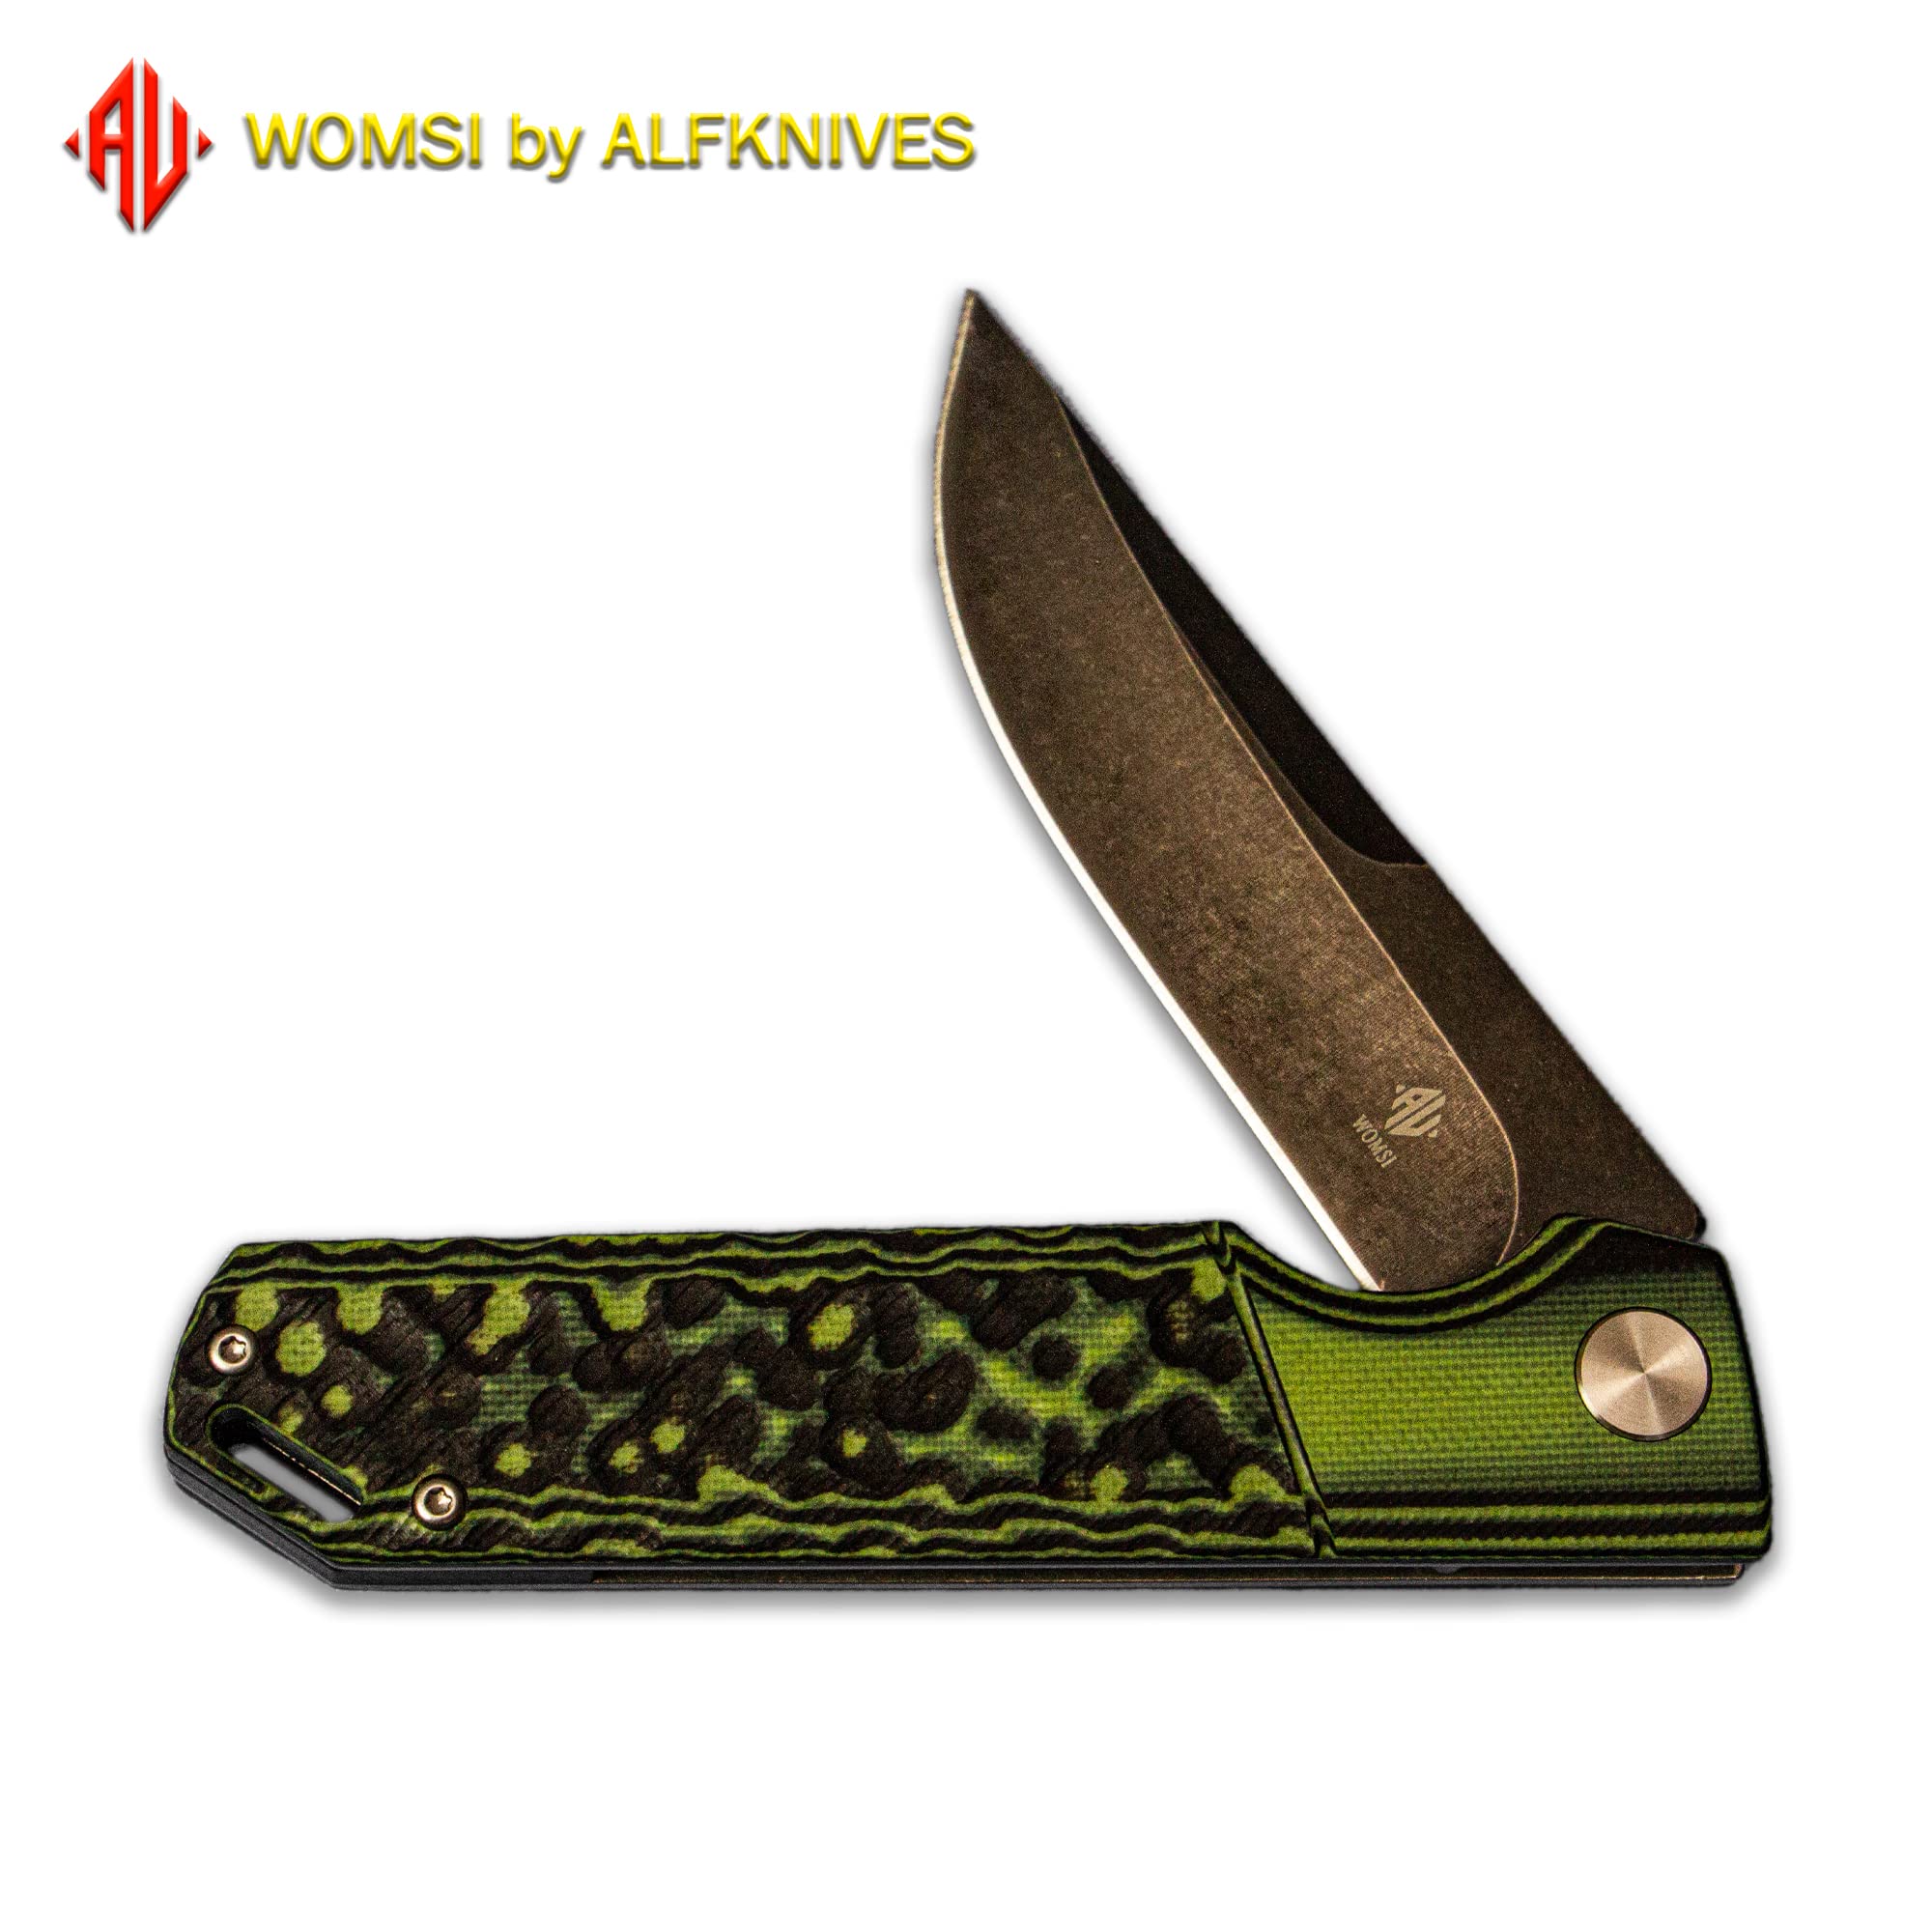  Alibuy 3 Ceramic Folding Knife Utility Knife (Blade